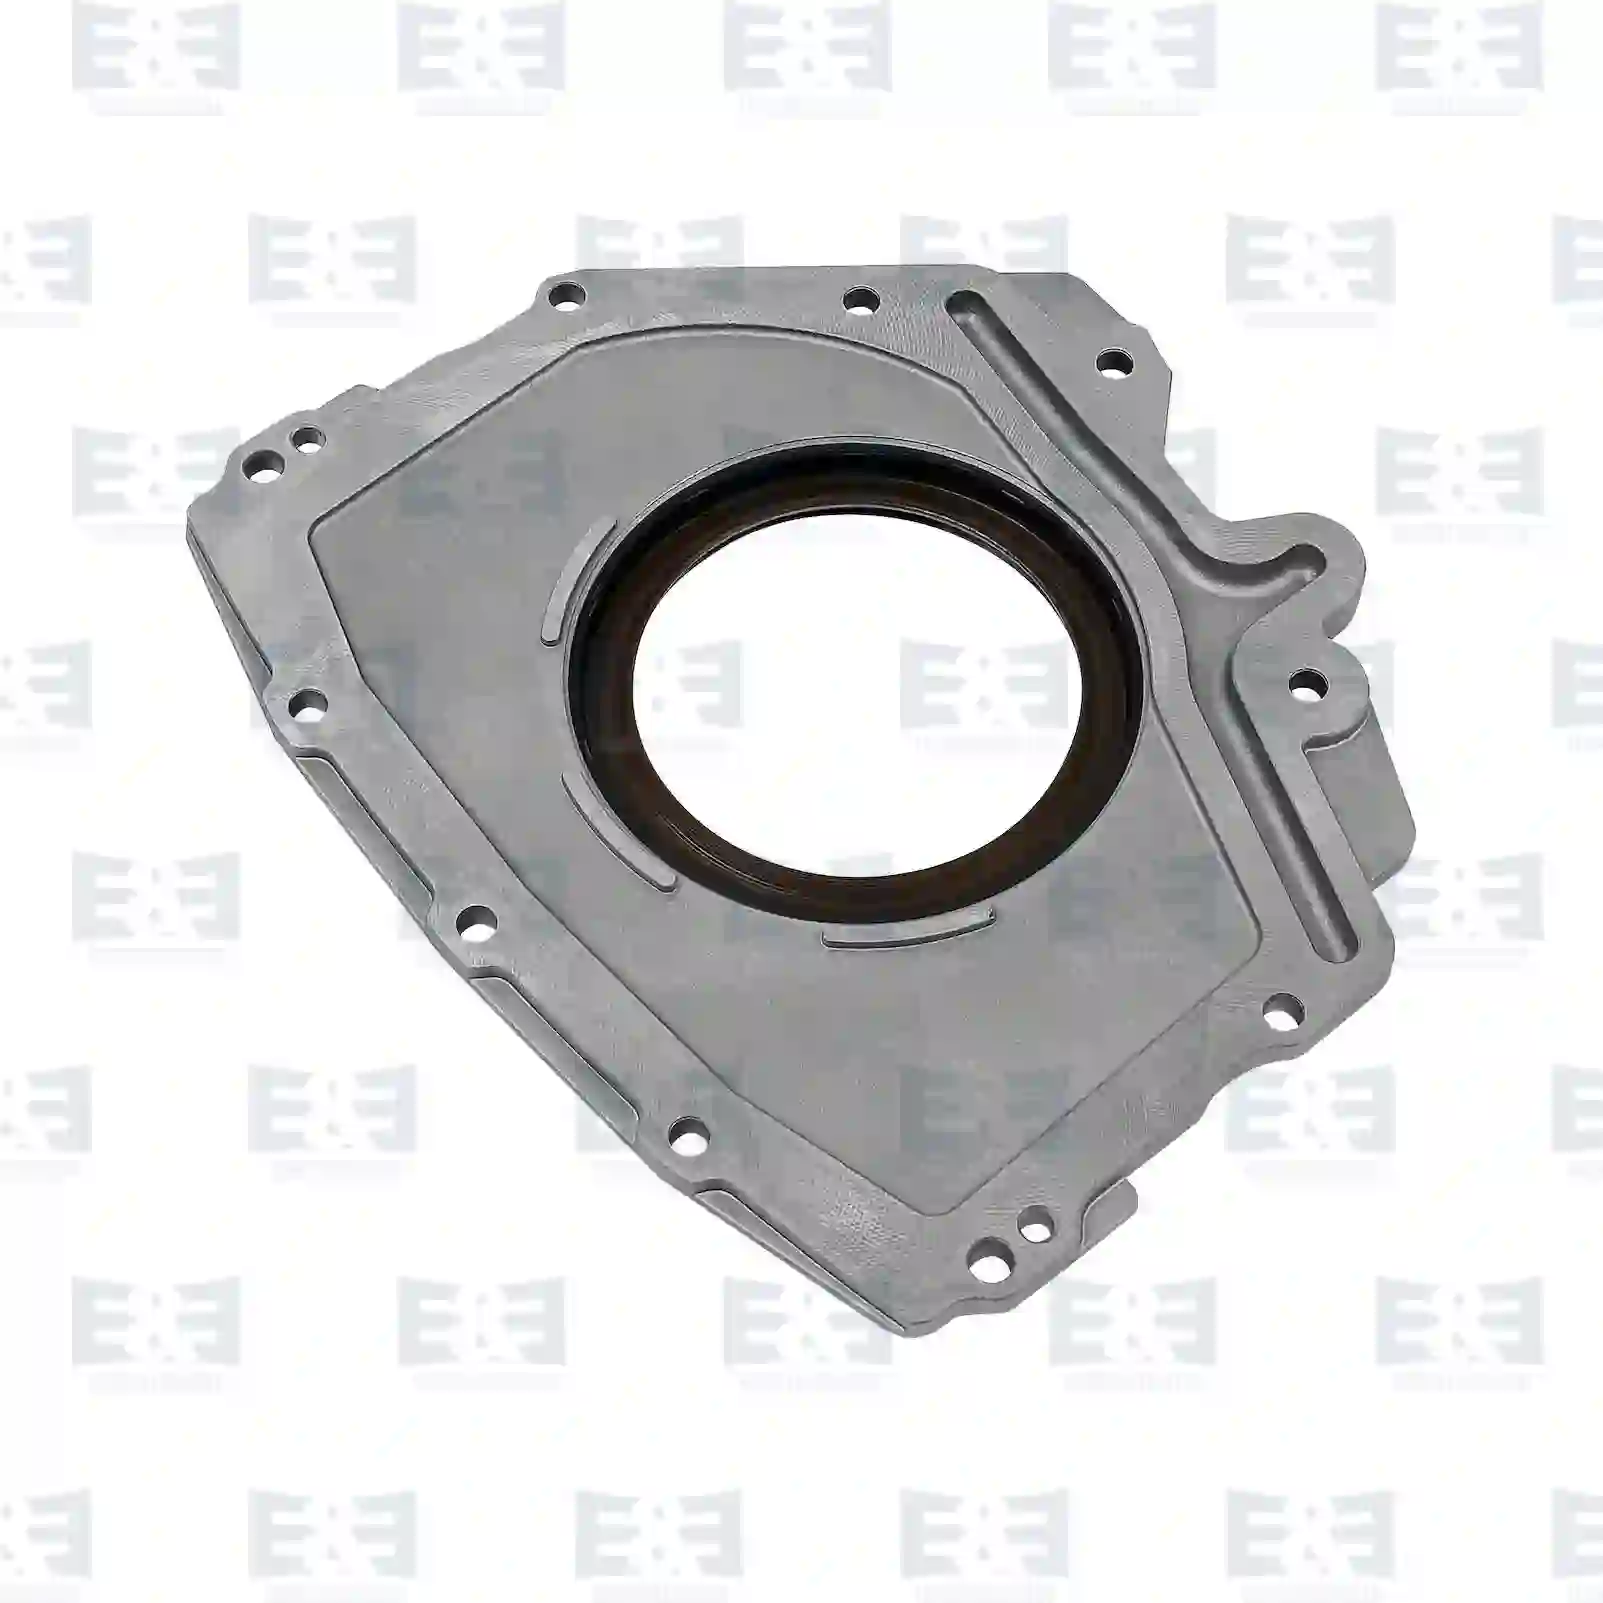  Crankcase cover, aluminium || E&E Truck Spare Parts | Truck Spare Parts, Auotomotive Spare Parts